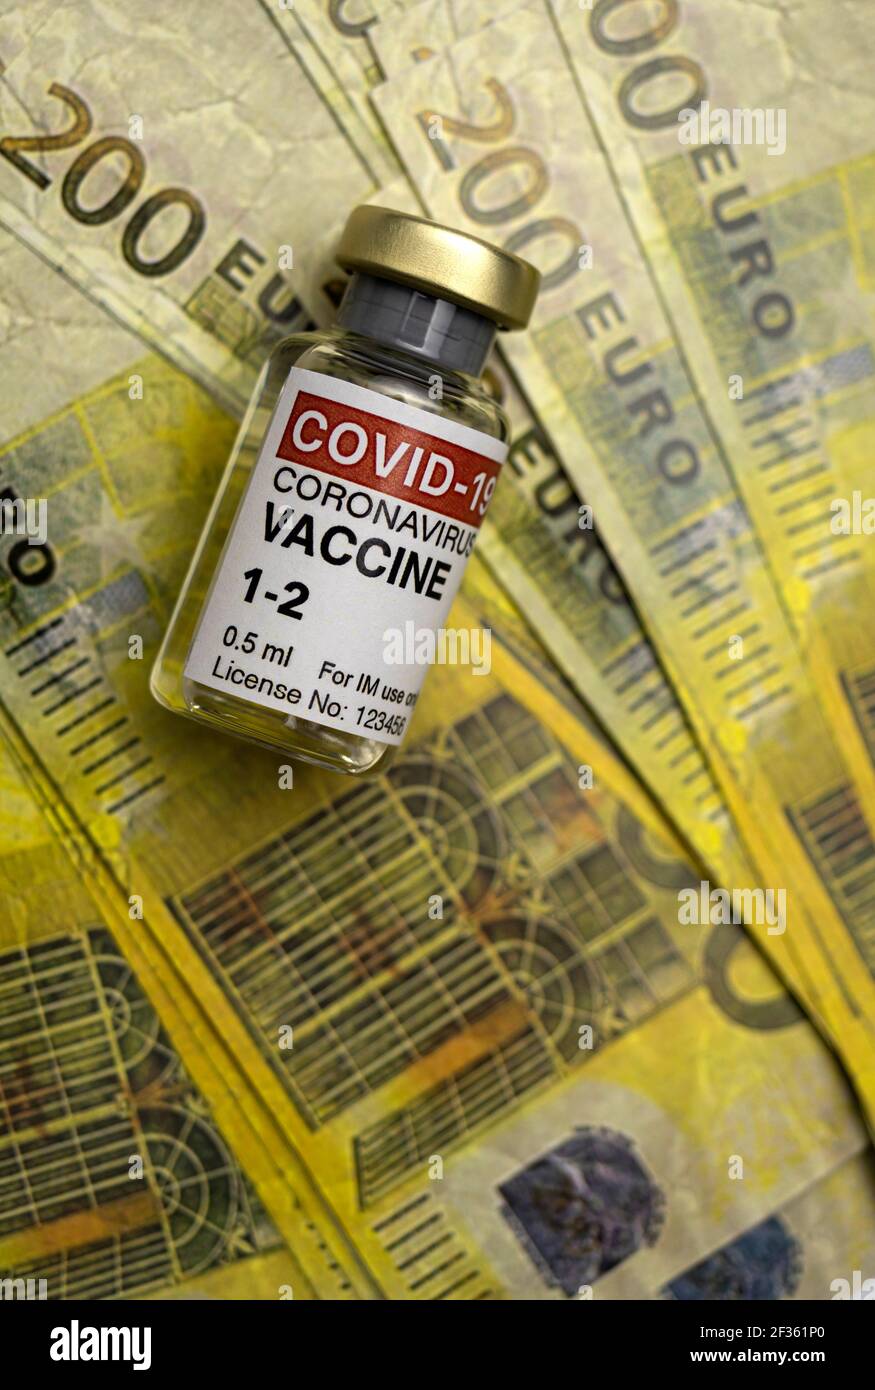 Vaccin Covid-19 à côté de plusieurs deux cents billets en euros, image conceptuelle Banque D'Images